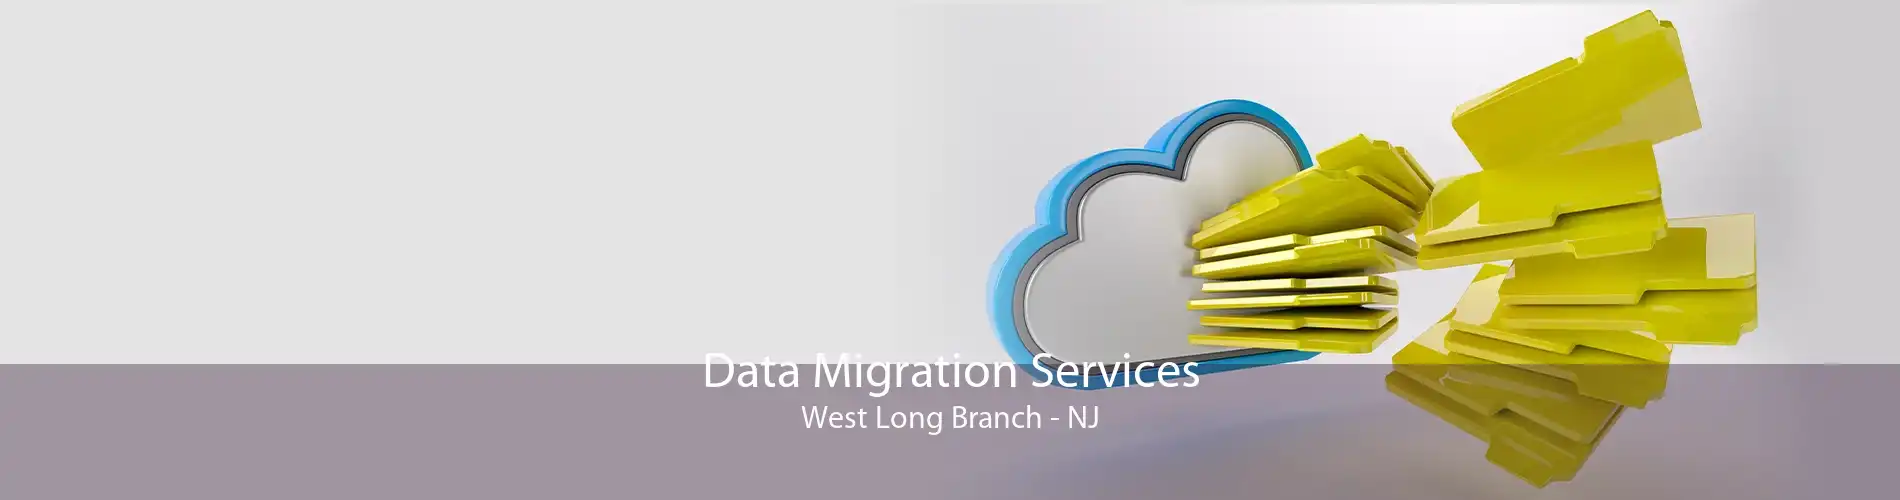 Data Migration Services West Long Branch - NJ